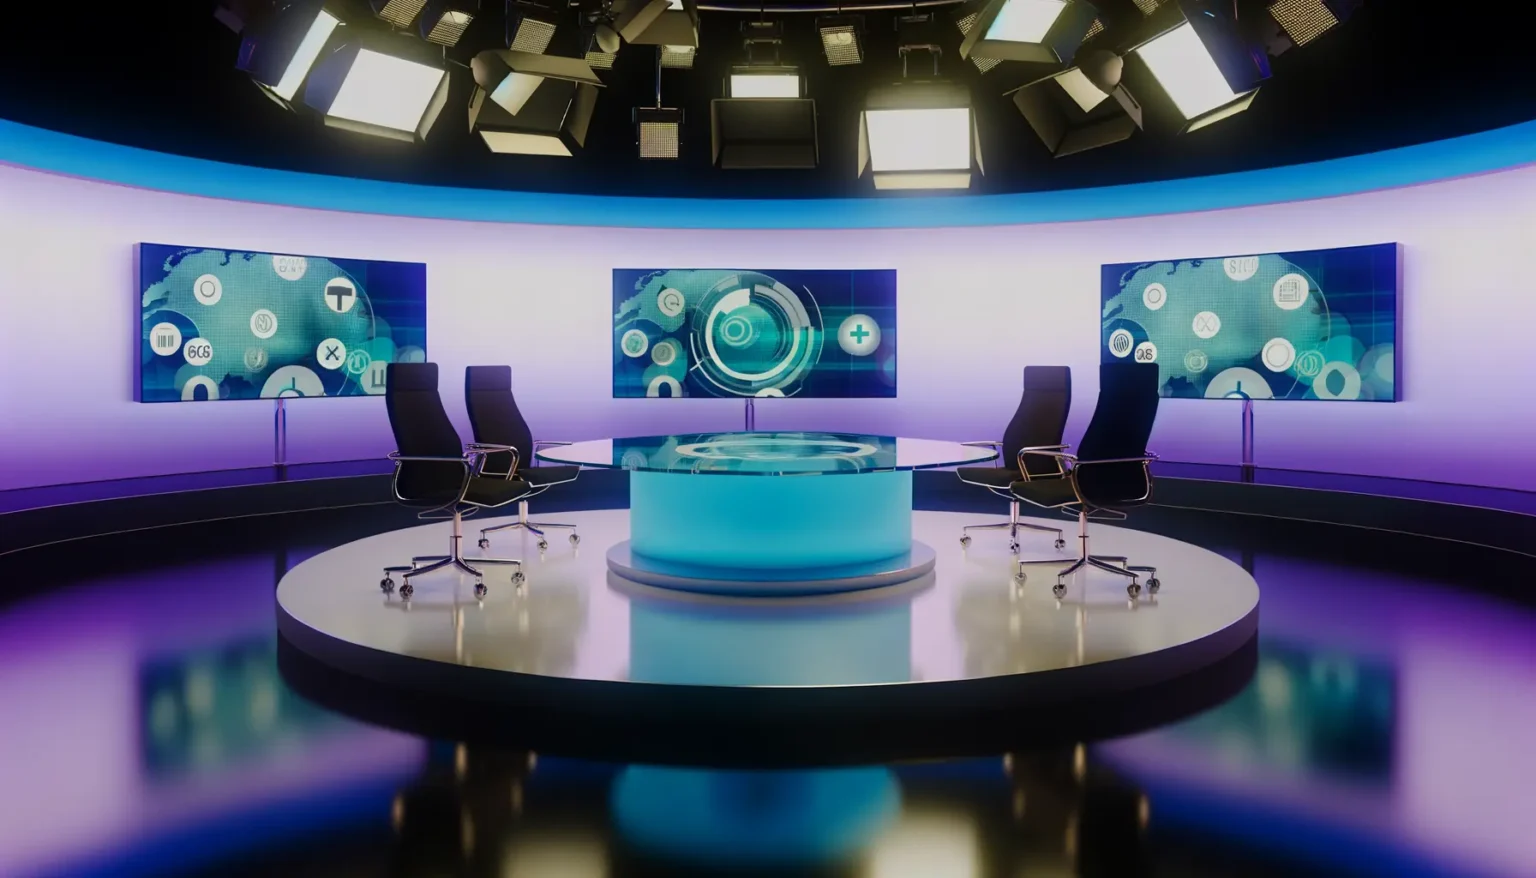 Moderne Fernsehstudio-Umgebung mit blau beleuchtetem Hintergrund und zentraler runder Tischfläche. Zwei Monitore im Hintergrund zeigen grafische Darstellungen von Daten und Diagrammen. Vier leere Stühle stehen um den Tisch herum, flankiert von mehreren Studiolichtern an der Decke.